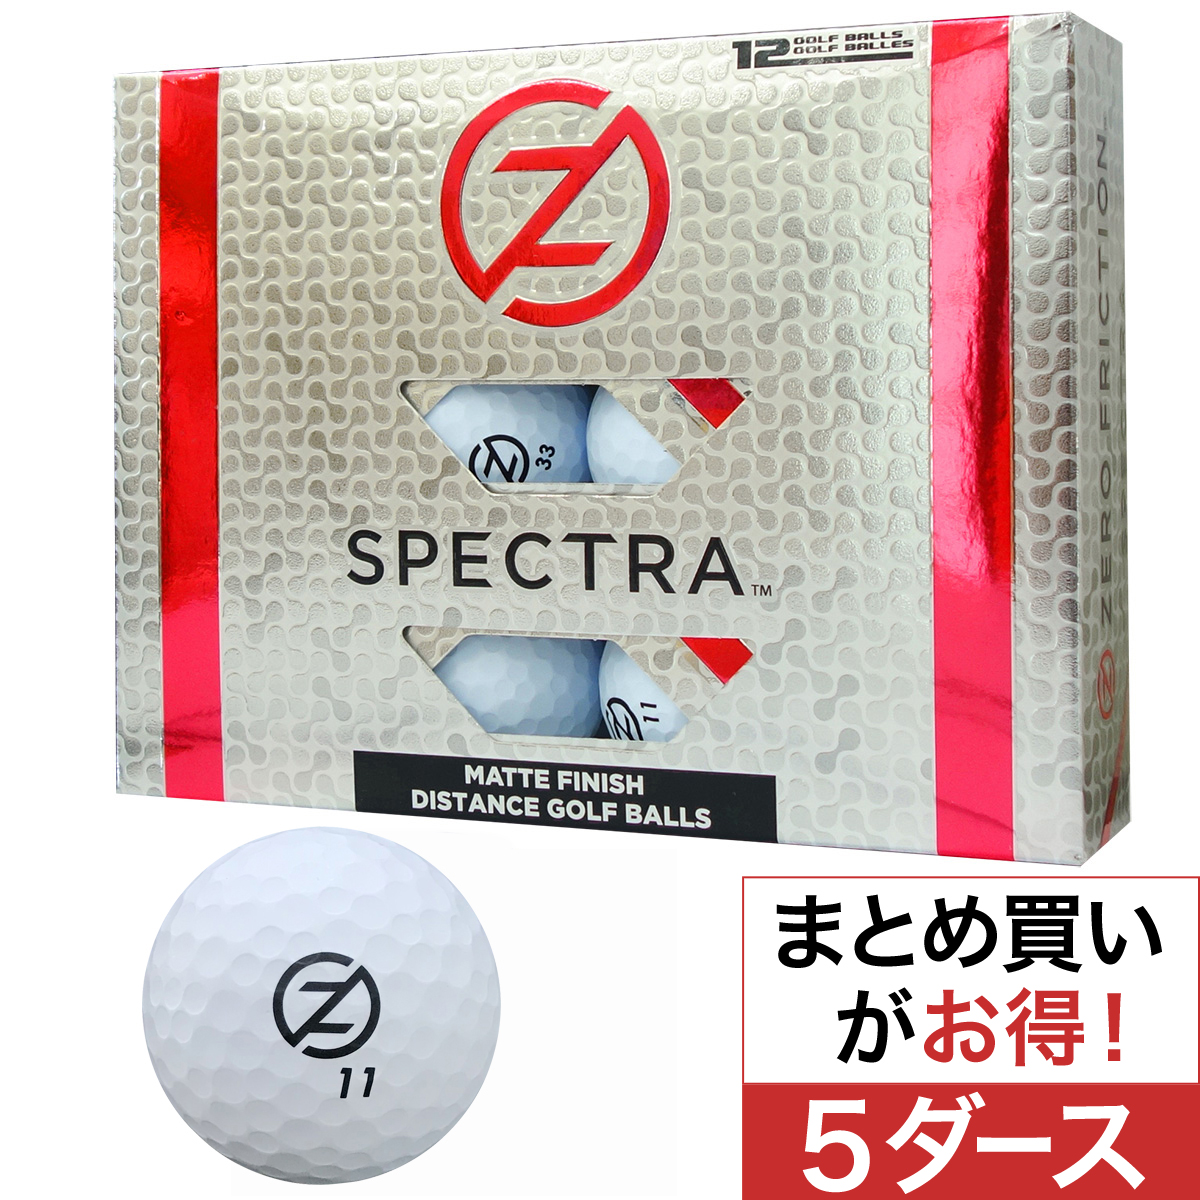  スペクトラ ボール 5ダースセット 【USモデル】